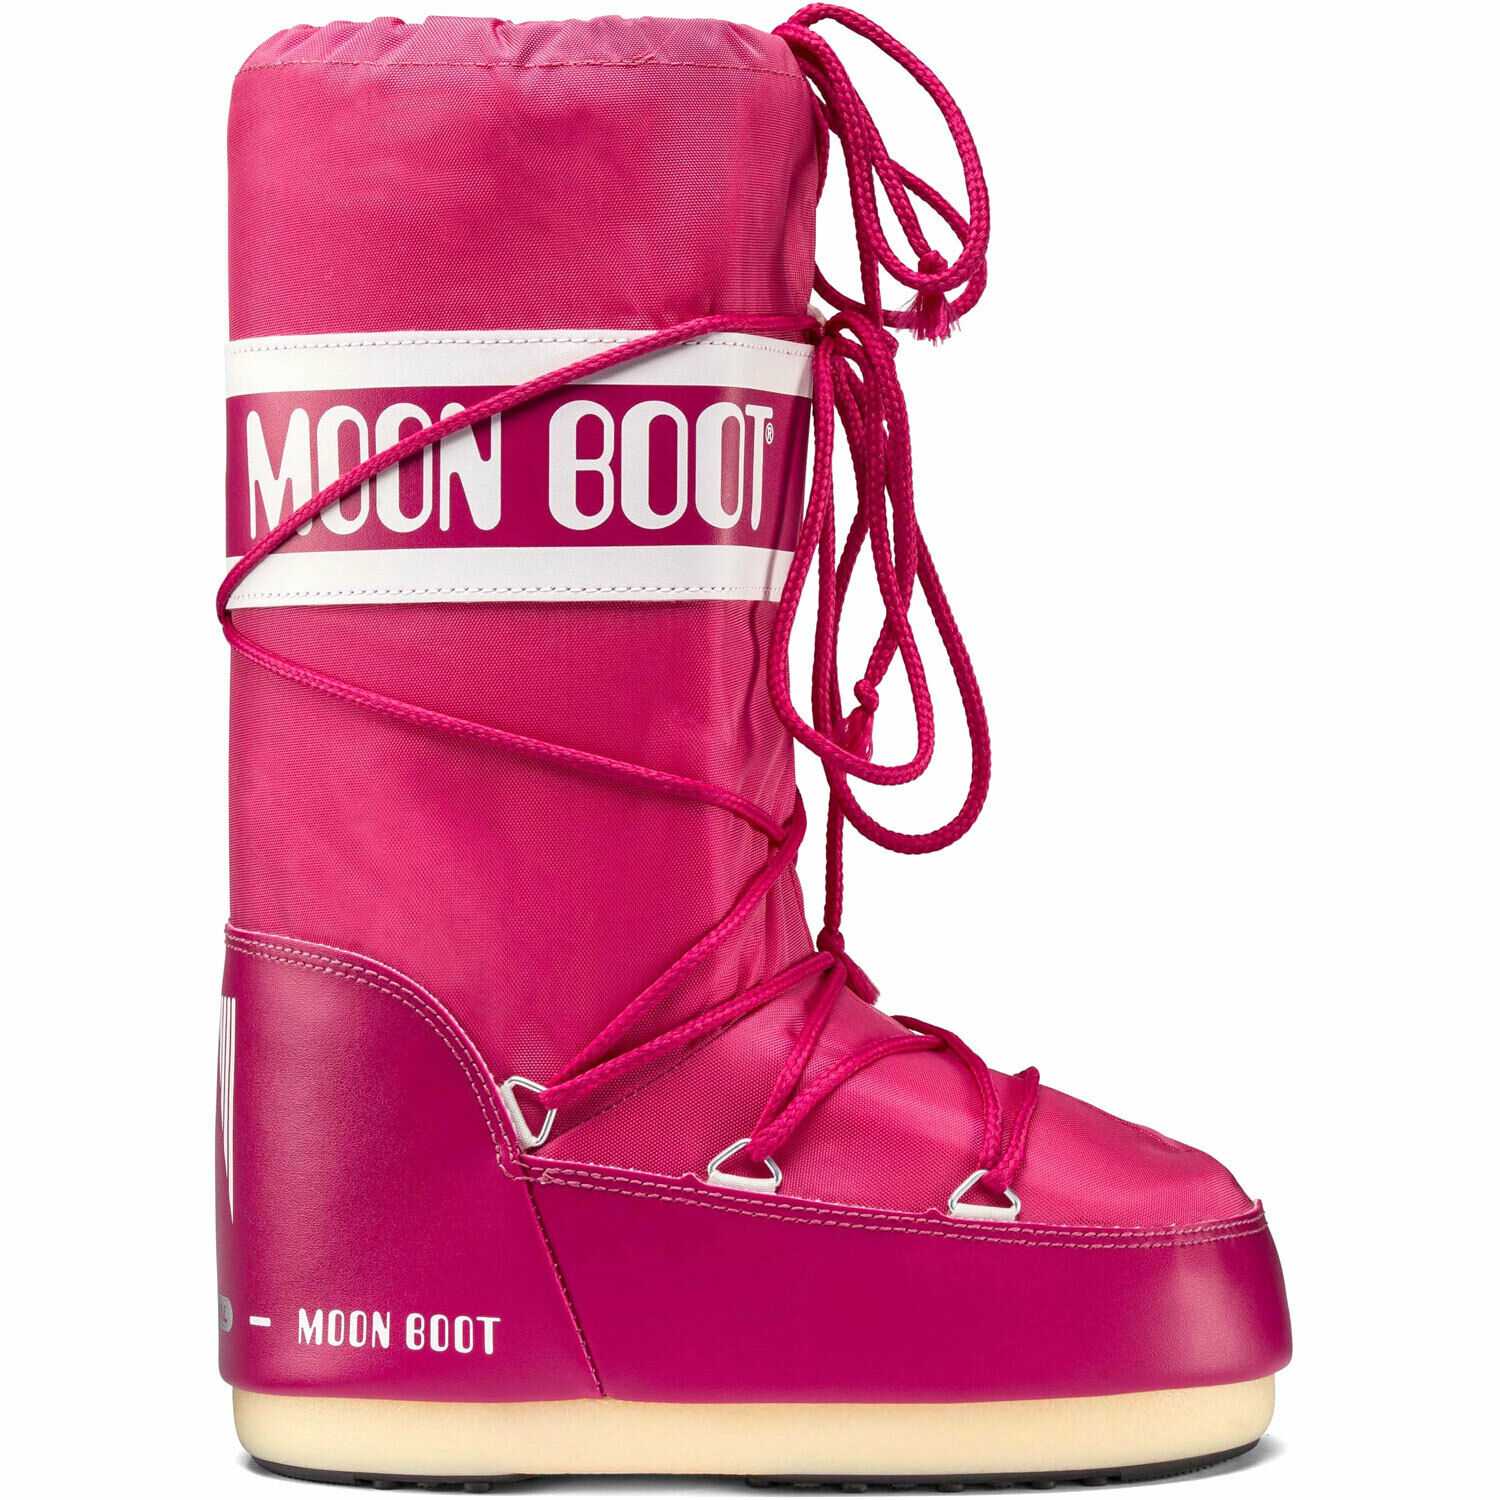 Нейлон сапоги. Moon Boot nylon сапоги. Moon Boot Kids зимние сапоги. Nike Moon Boot. Луноходы Moon Boot.